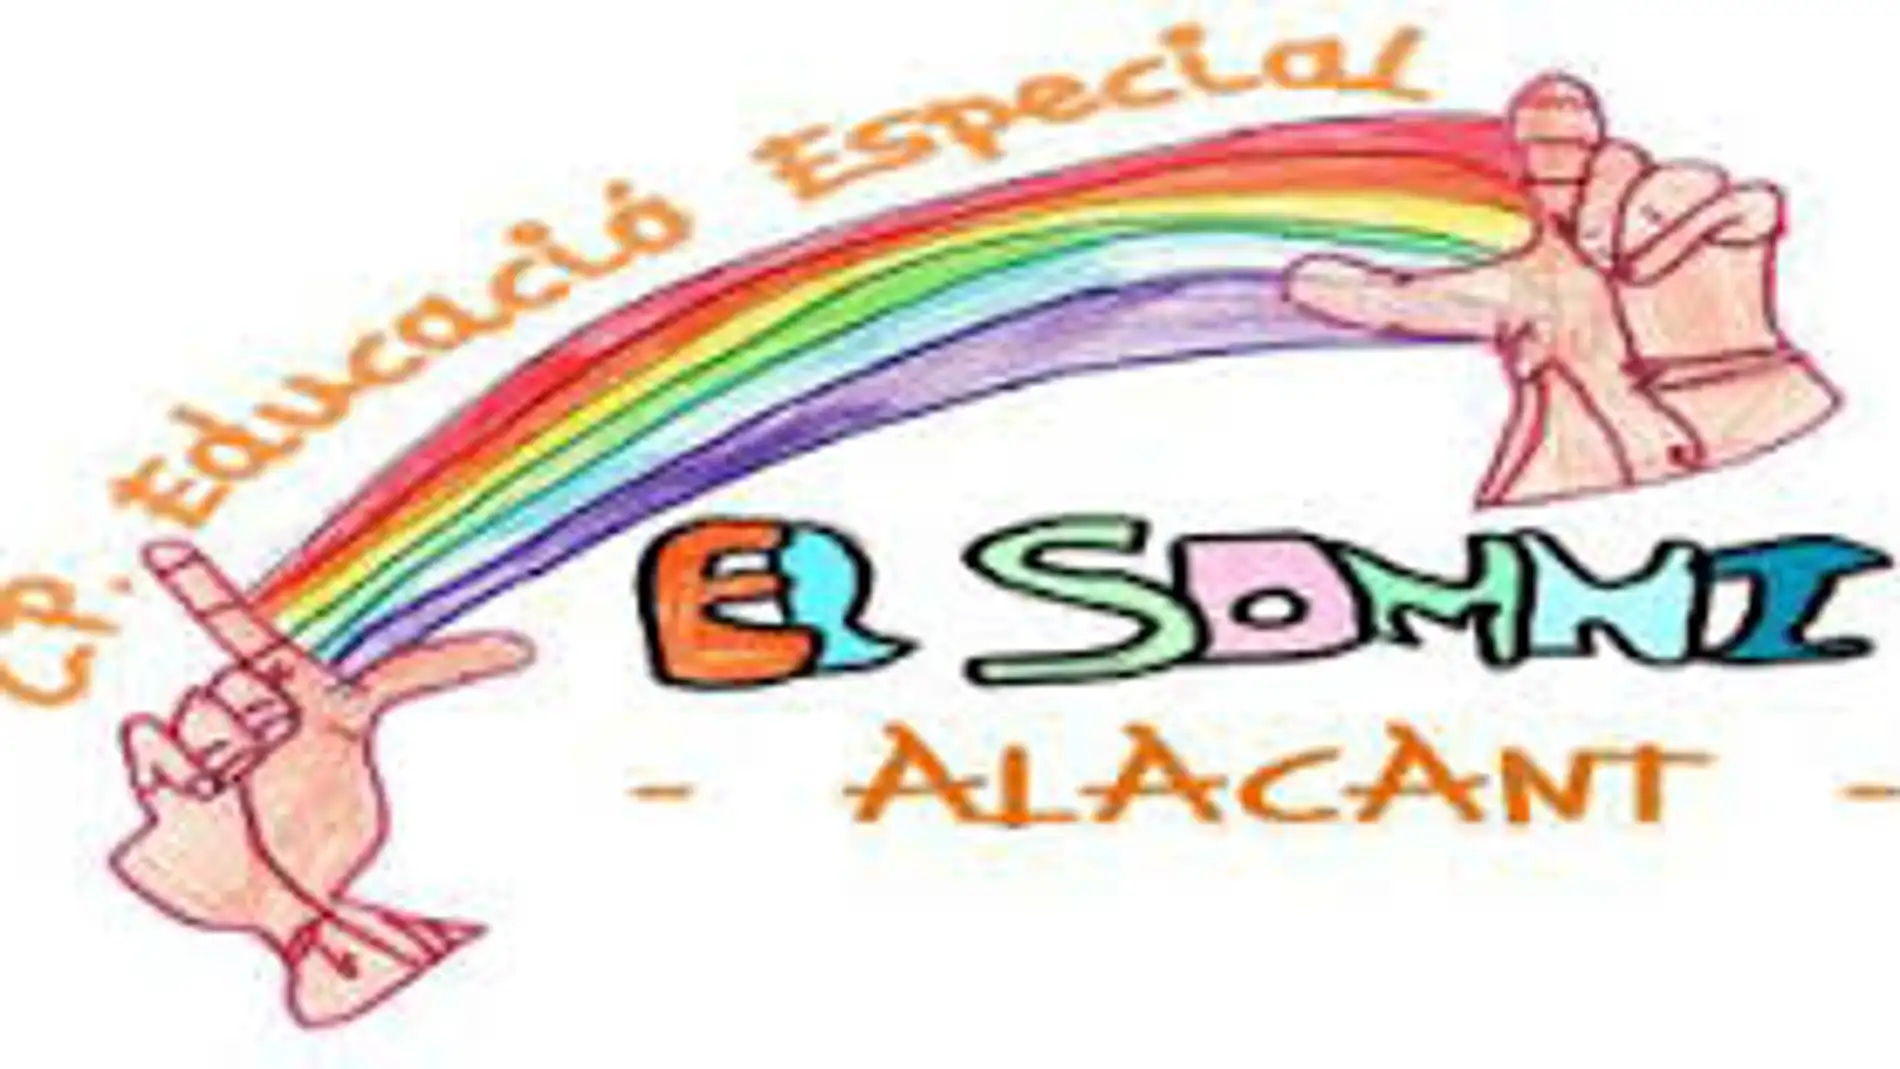 Logotipo del Colegio El Somni de Alicante